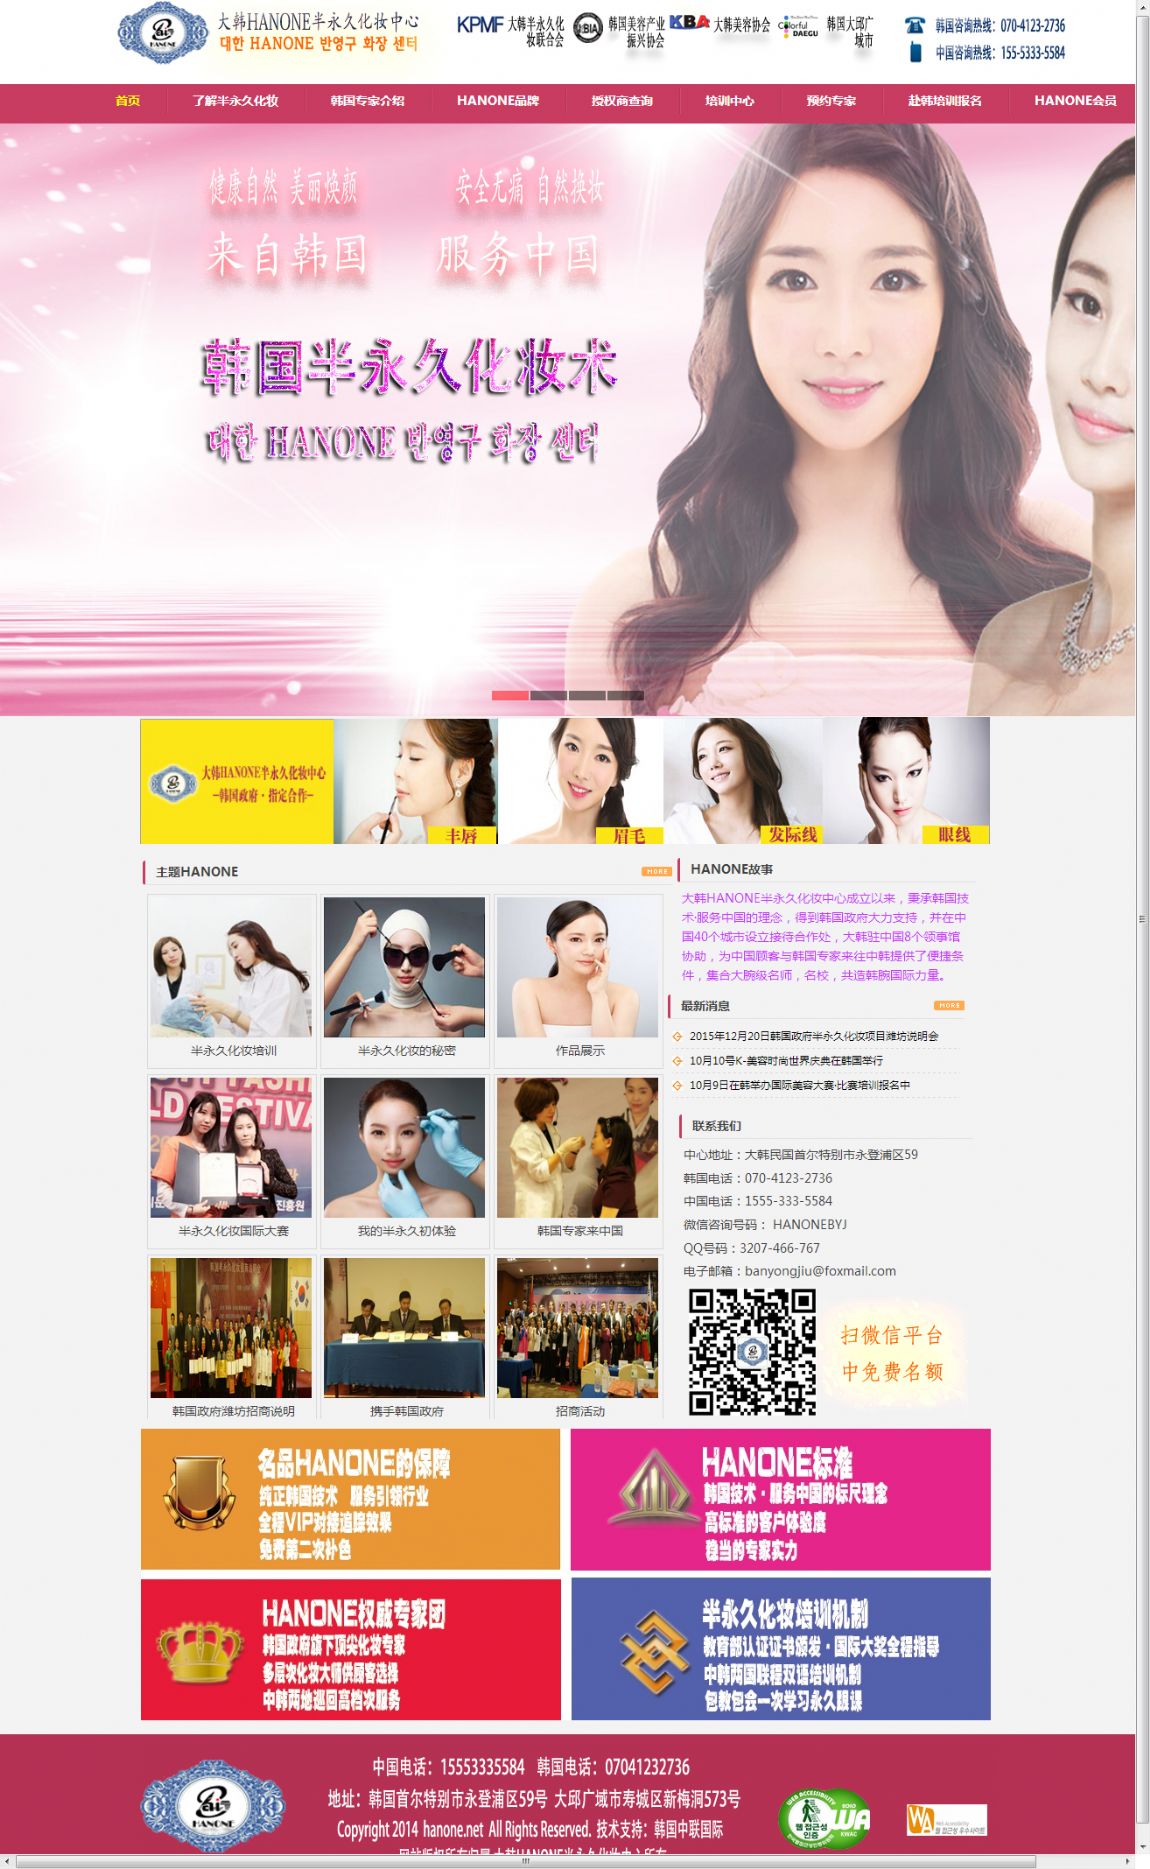 韩国HANONE半永久化妆中心